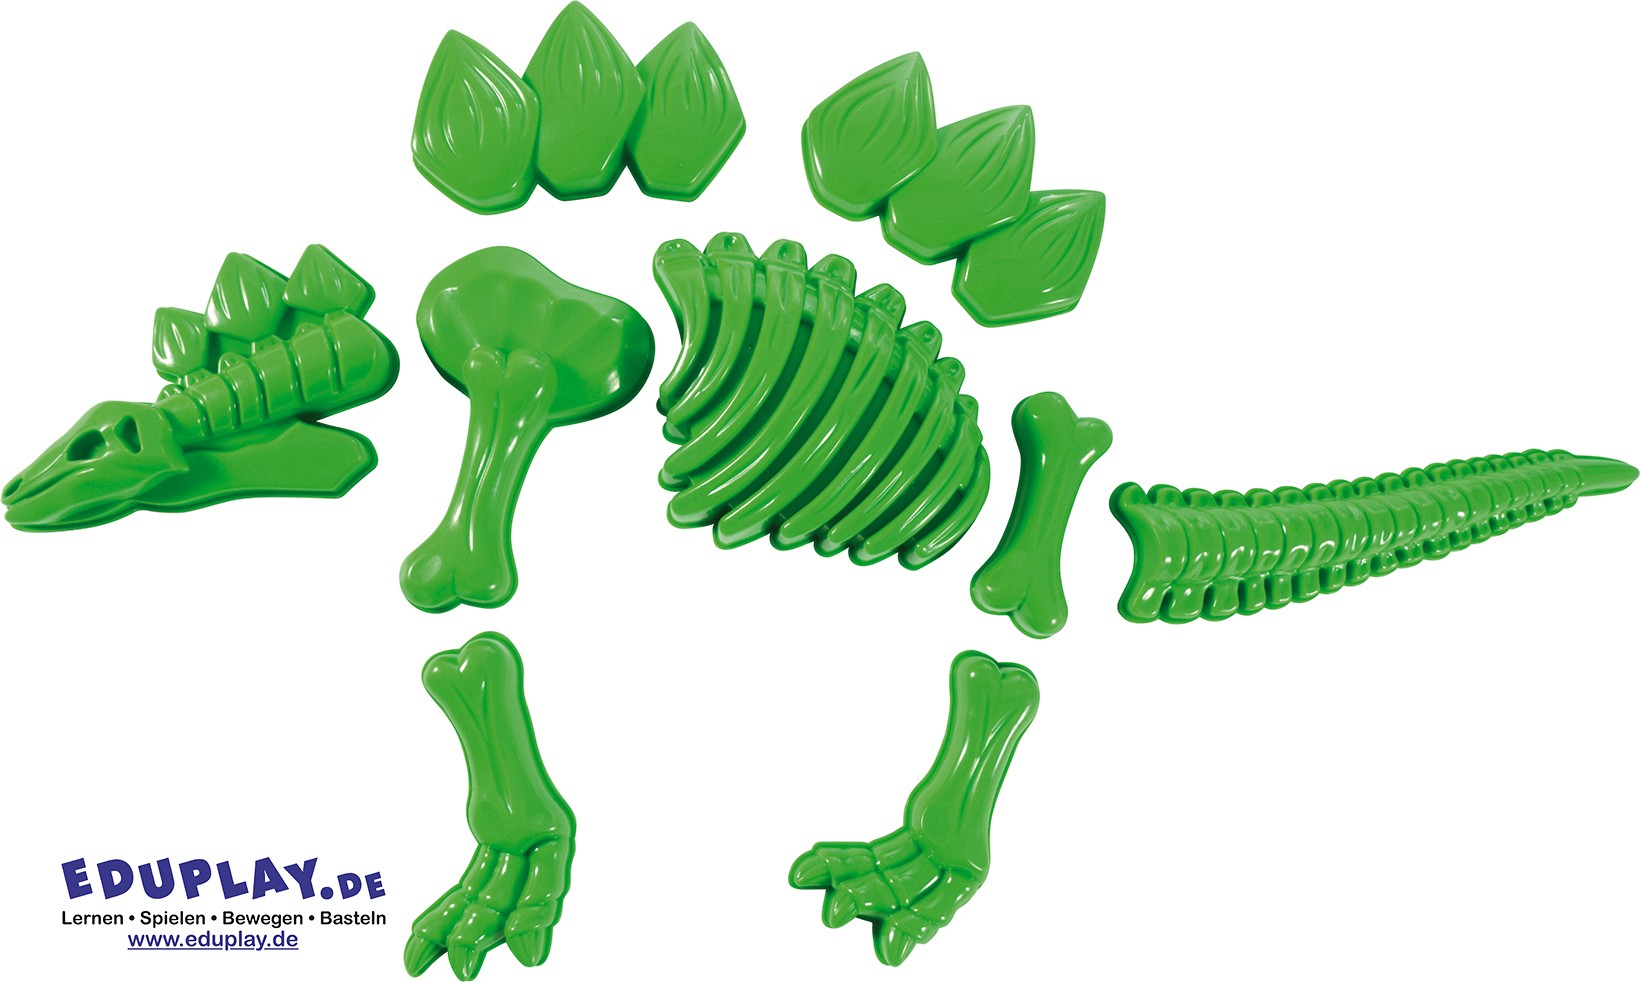 Sandformen Stegosaurus grün Da vergisst man glatt die U(h)rzeit ... beim Formen dieses beeindruckenden Riesentieres.